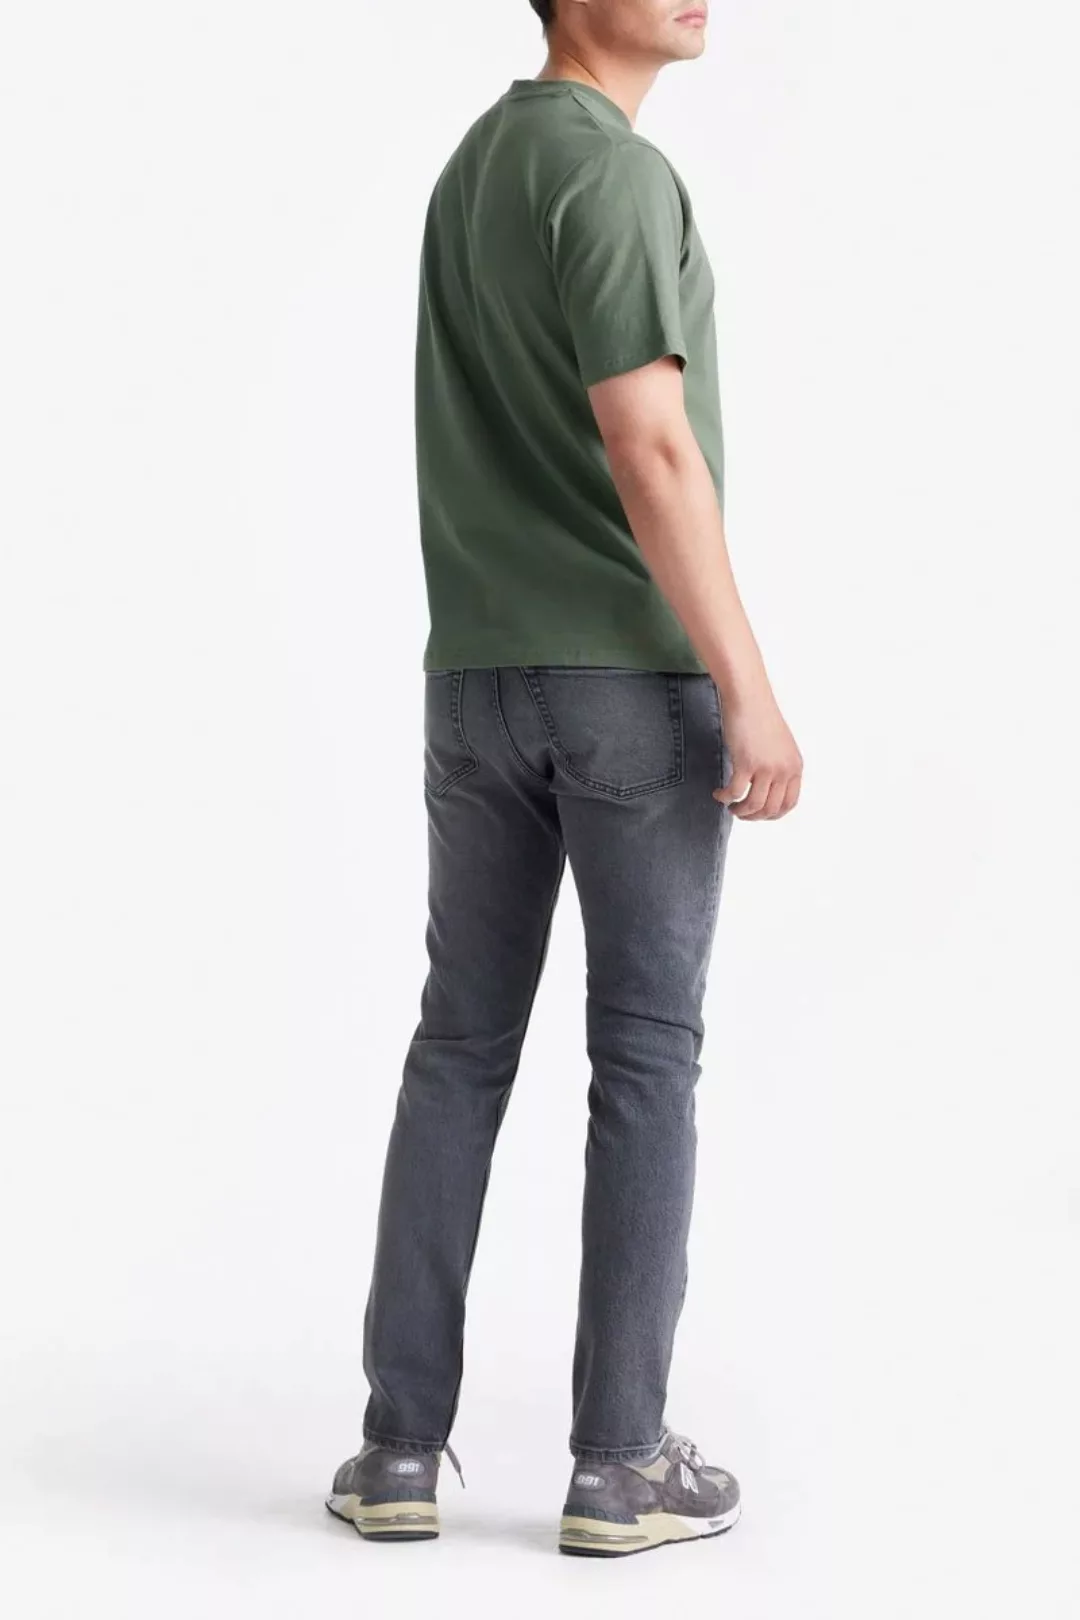 King Essentials The Shawn T-Shirt Olivgrün - Größe XL günstig online kaufen